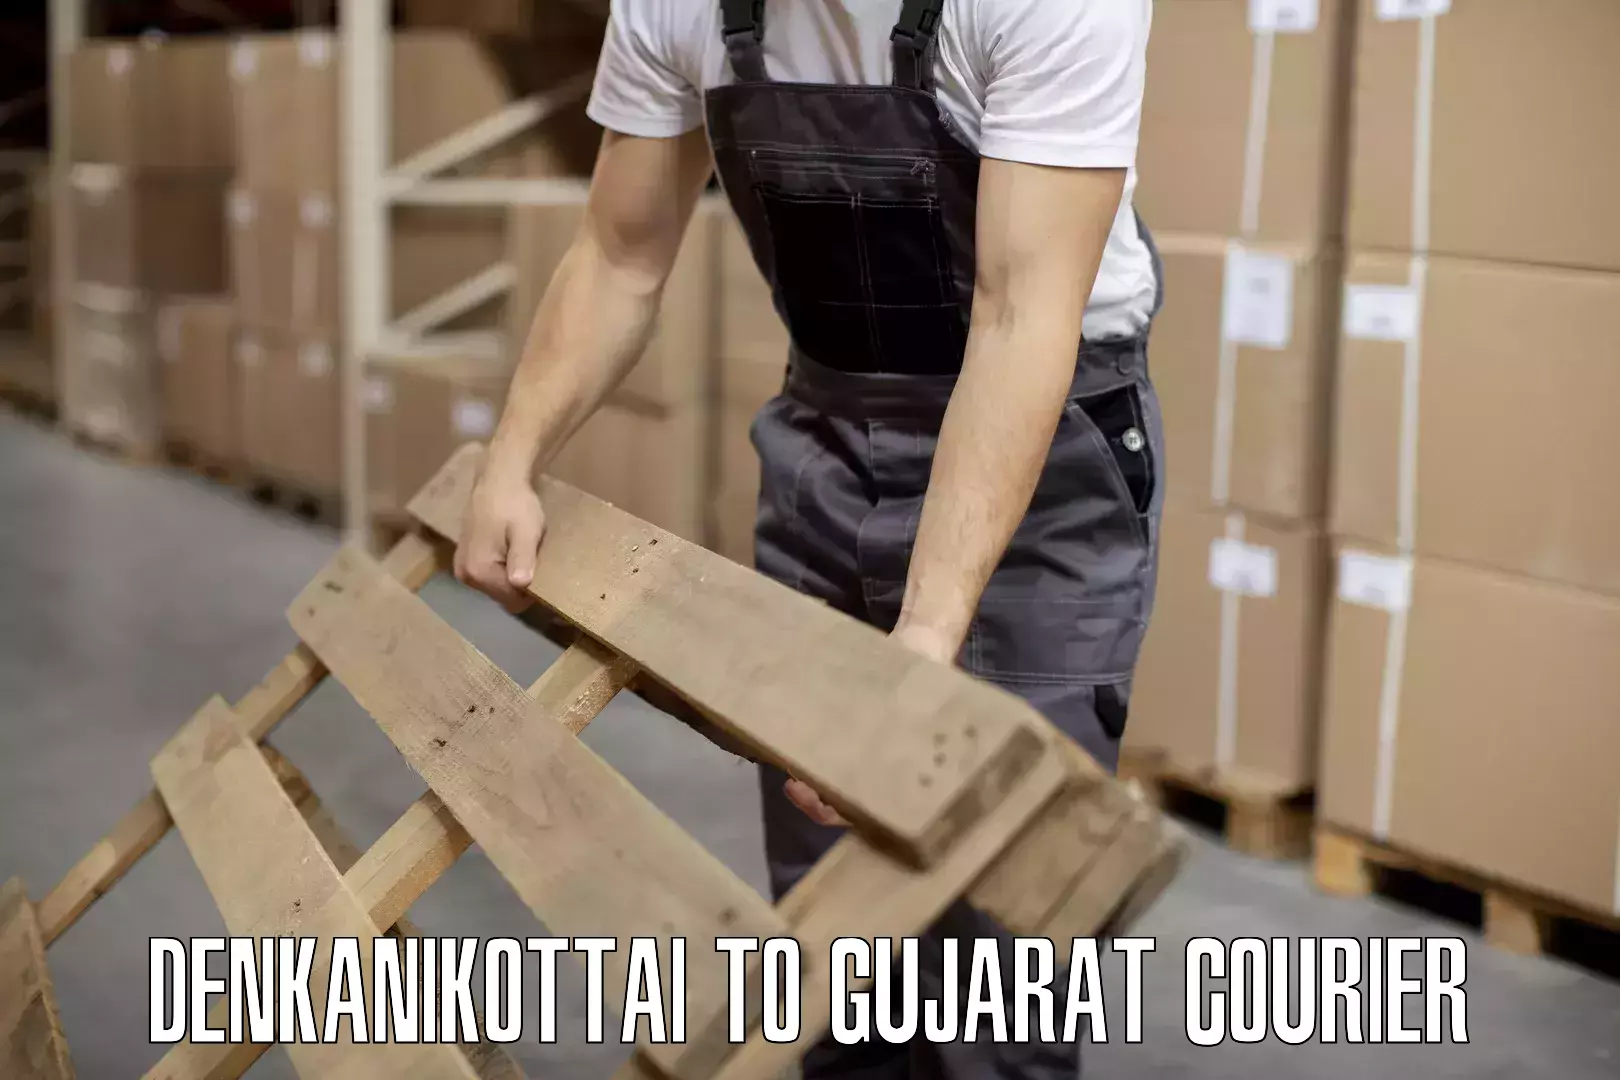 Luggage delivery solutions Denkanikottai to Narmada Gujarat